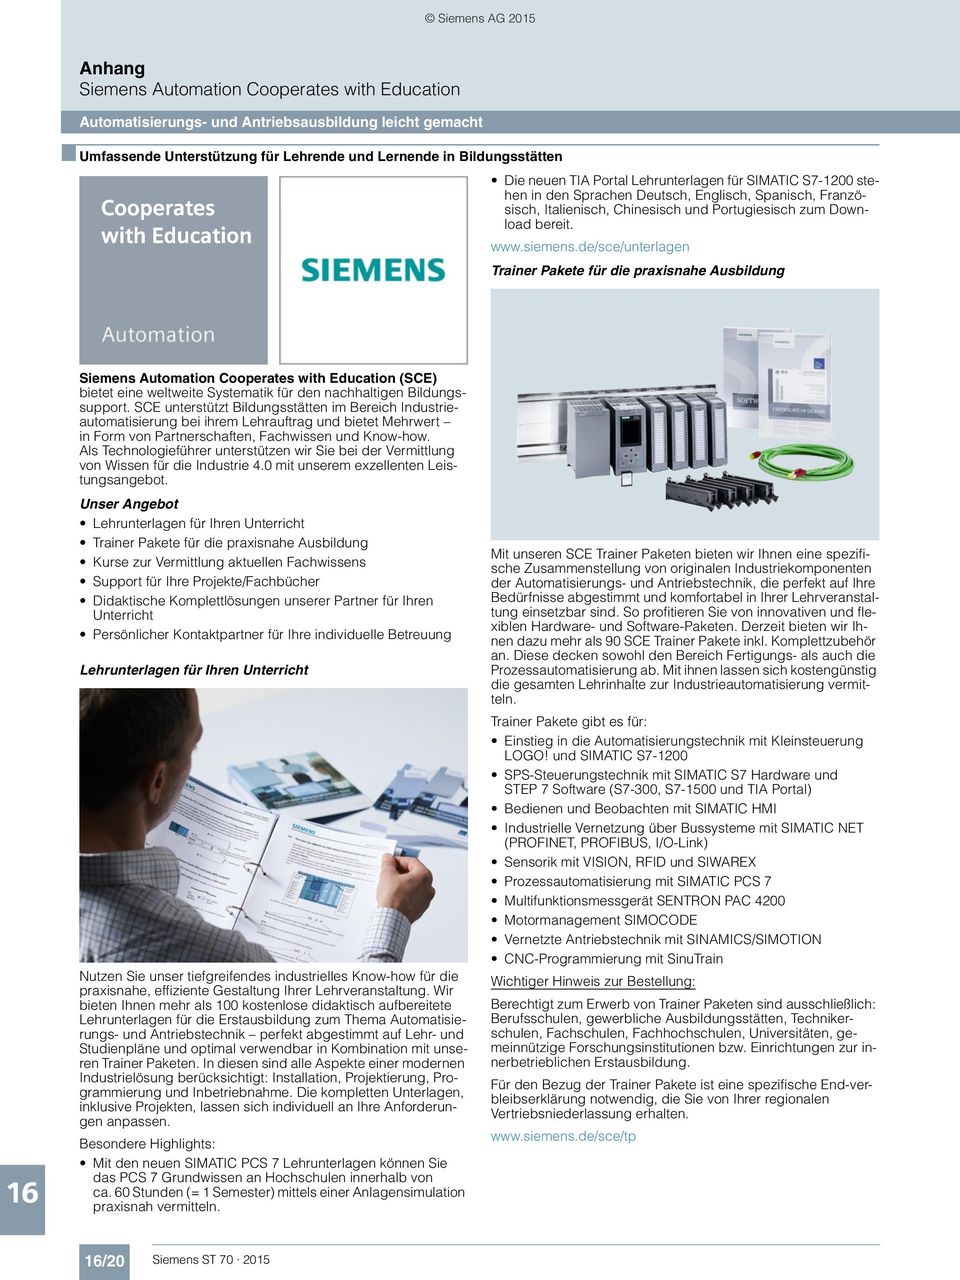 de/sce/unterlagen Trainer Pakete für die praxisnahe Ausbildung Siemens Automation Cooperates with Education (SCE) bietet eine weltweite Systematik für den nachhaltigen Bildungssupport.